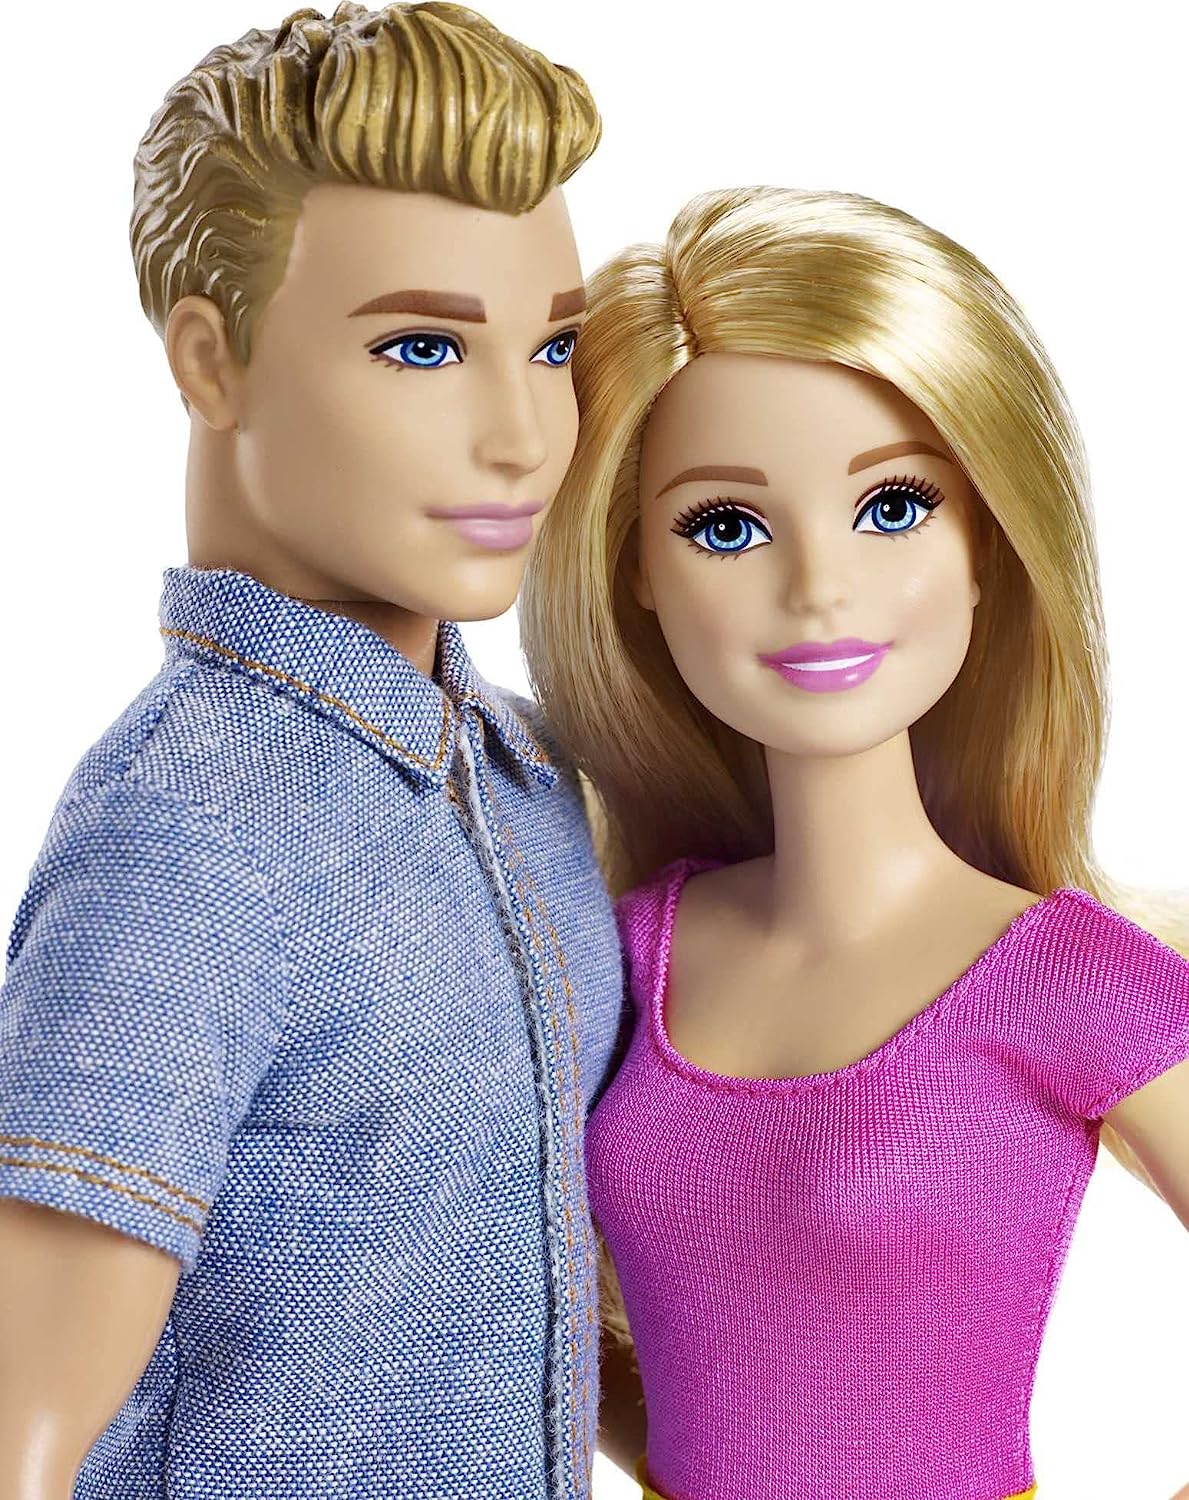 即日出荷 バービー バービー人形 ケン Ken Dlh76 Barbie And Ken Doll Together Amazon Exclusive バービー バービー人形 ケン Ken Dlh76 Angelica 最適な価格 Www Faan Gov Ng